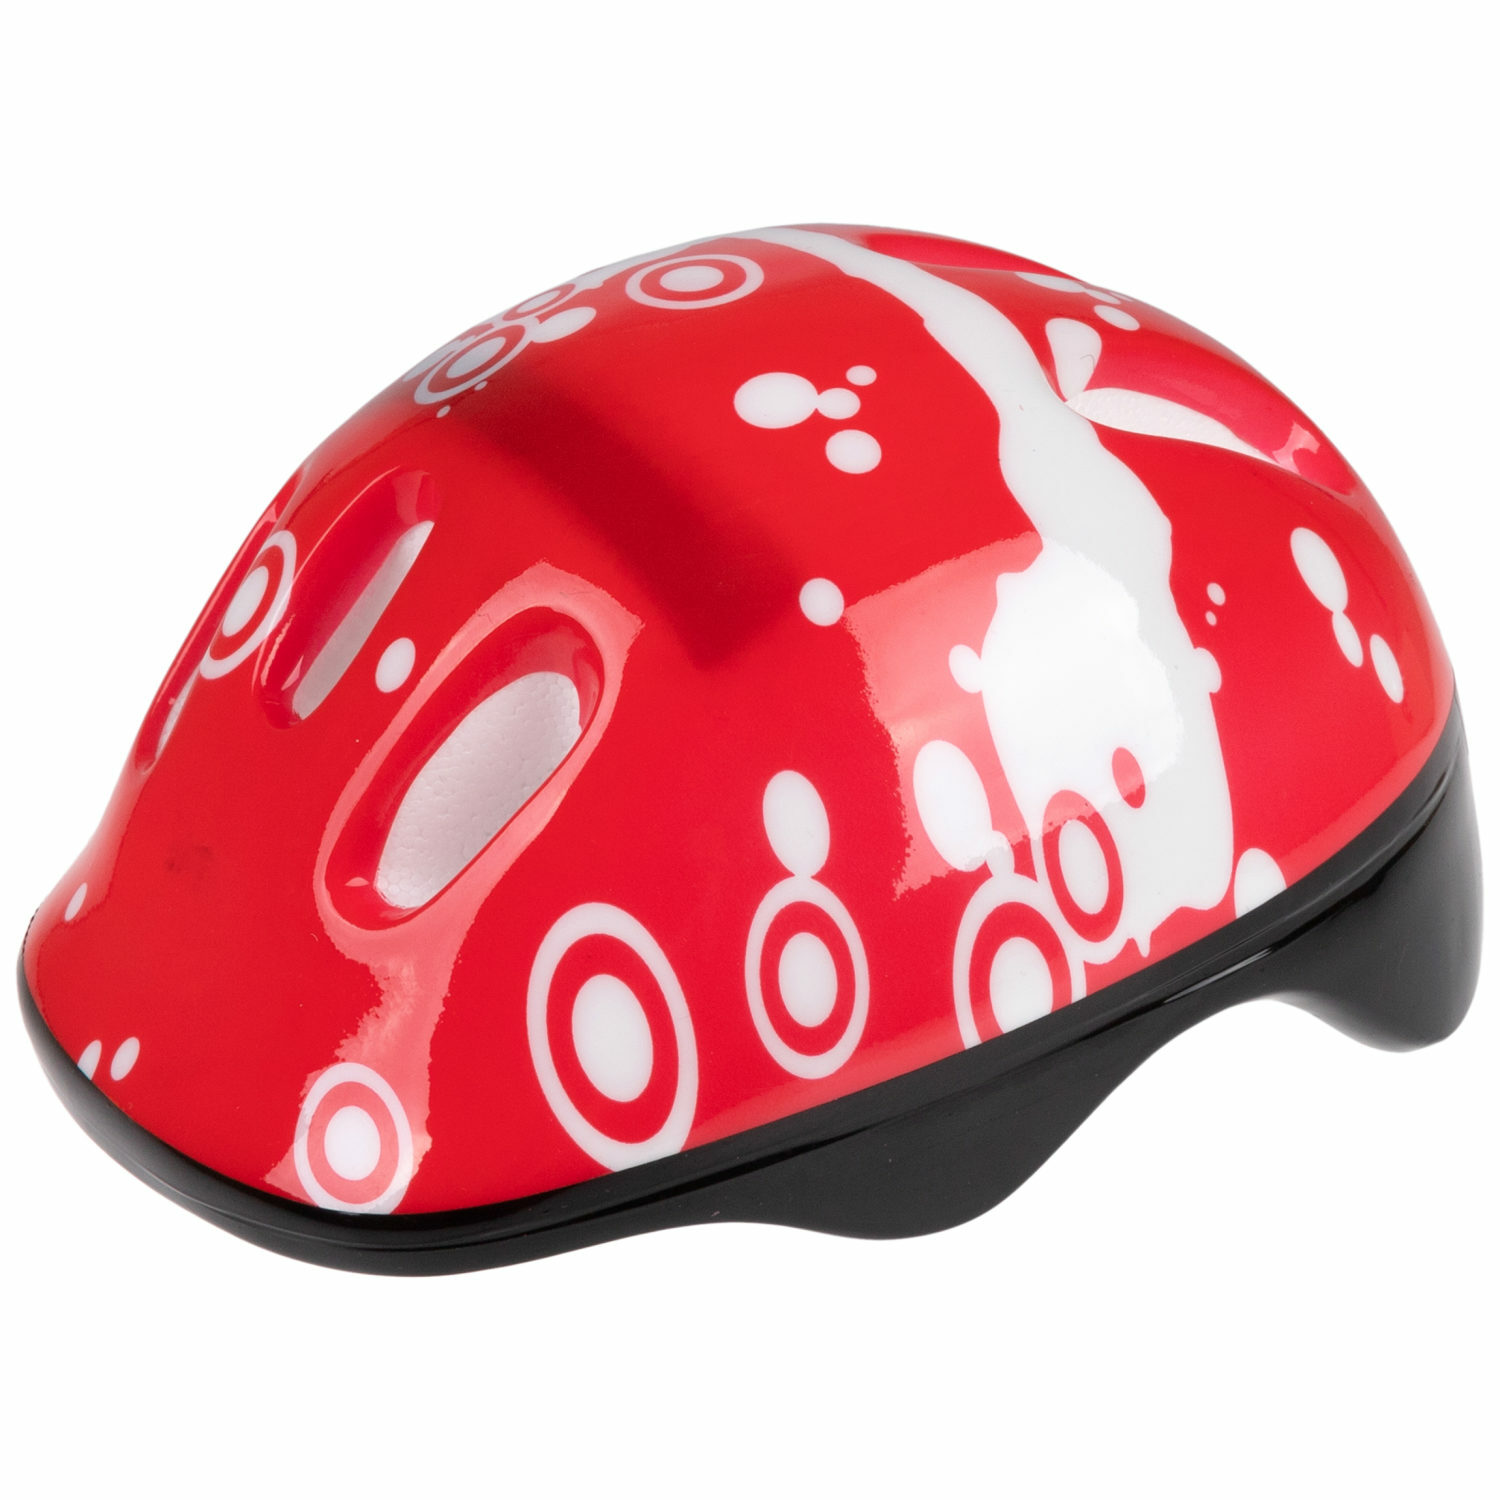 Ролики Navigator детские раздвижные 30 - 33 размер с защитой и шлемом красный - фото 12